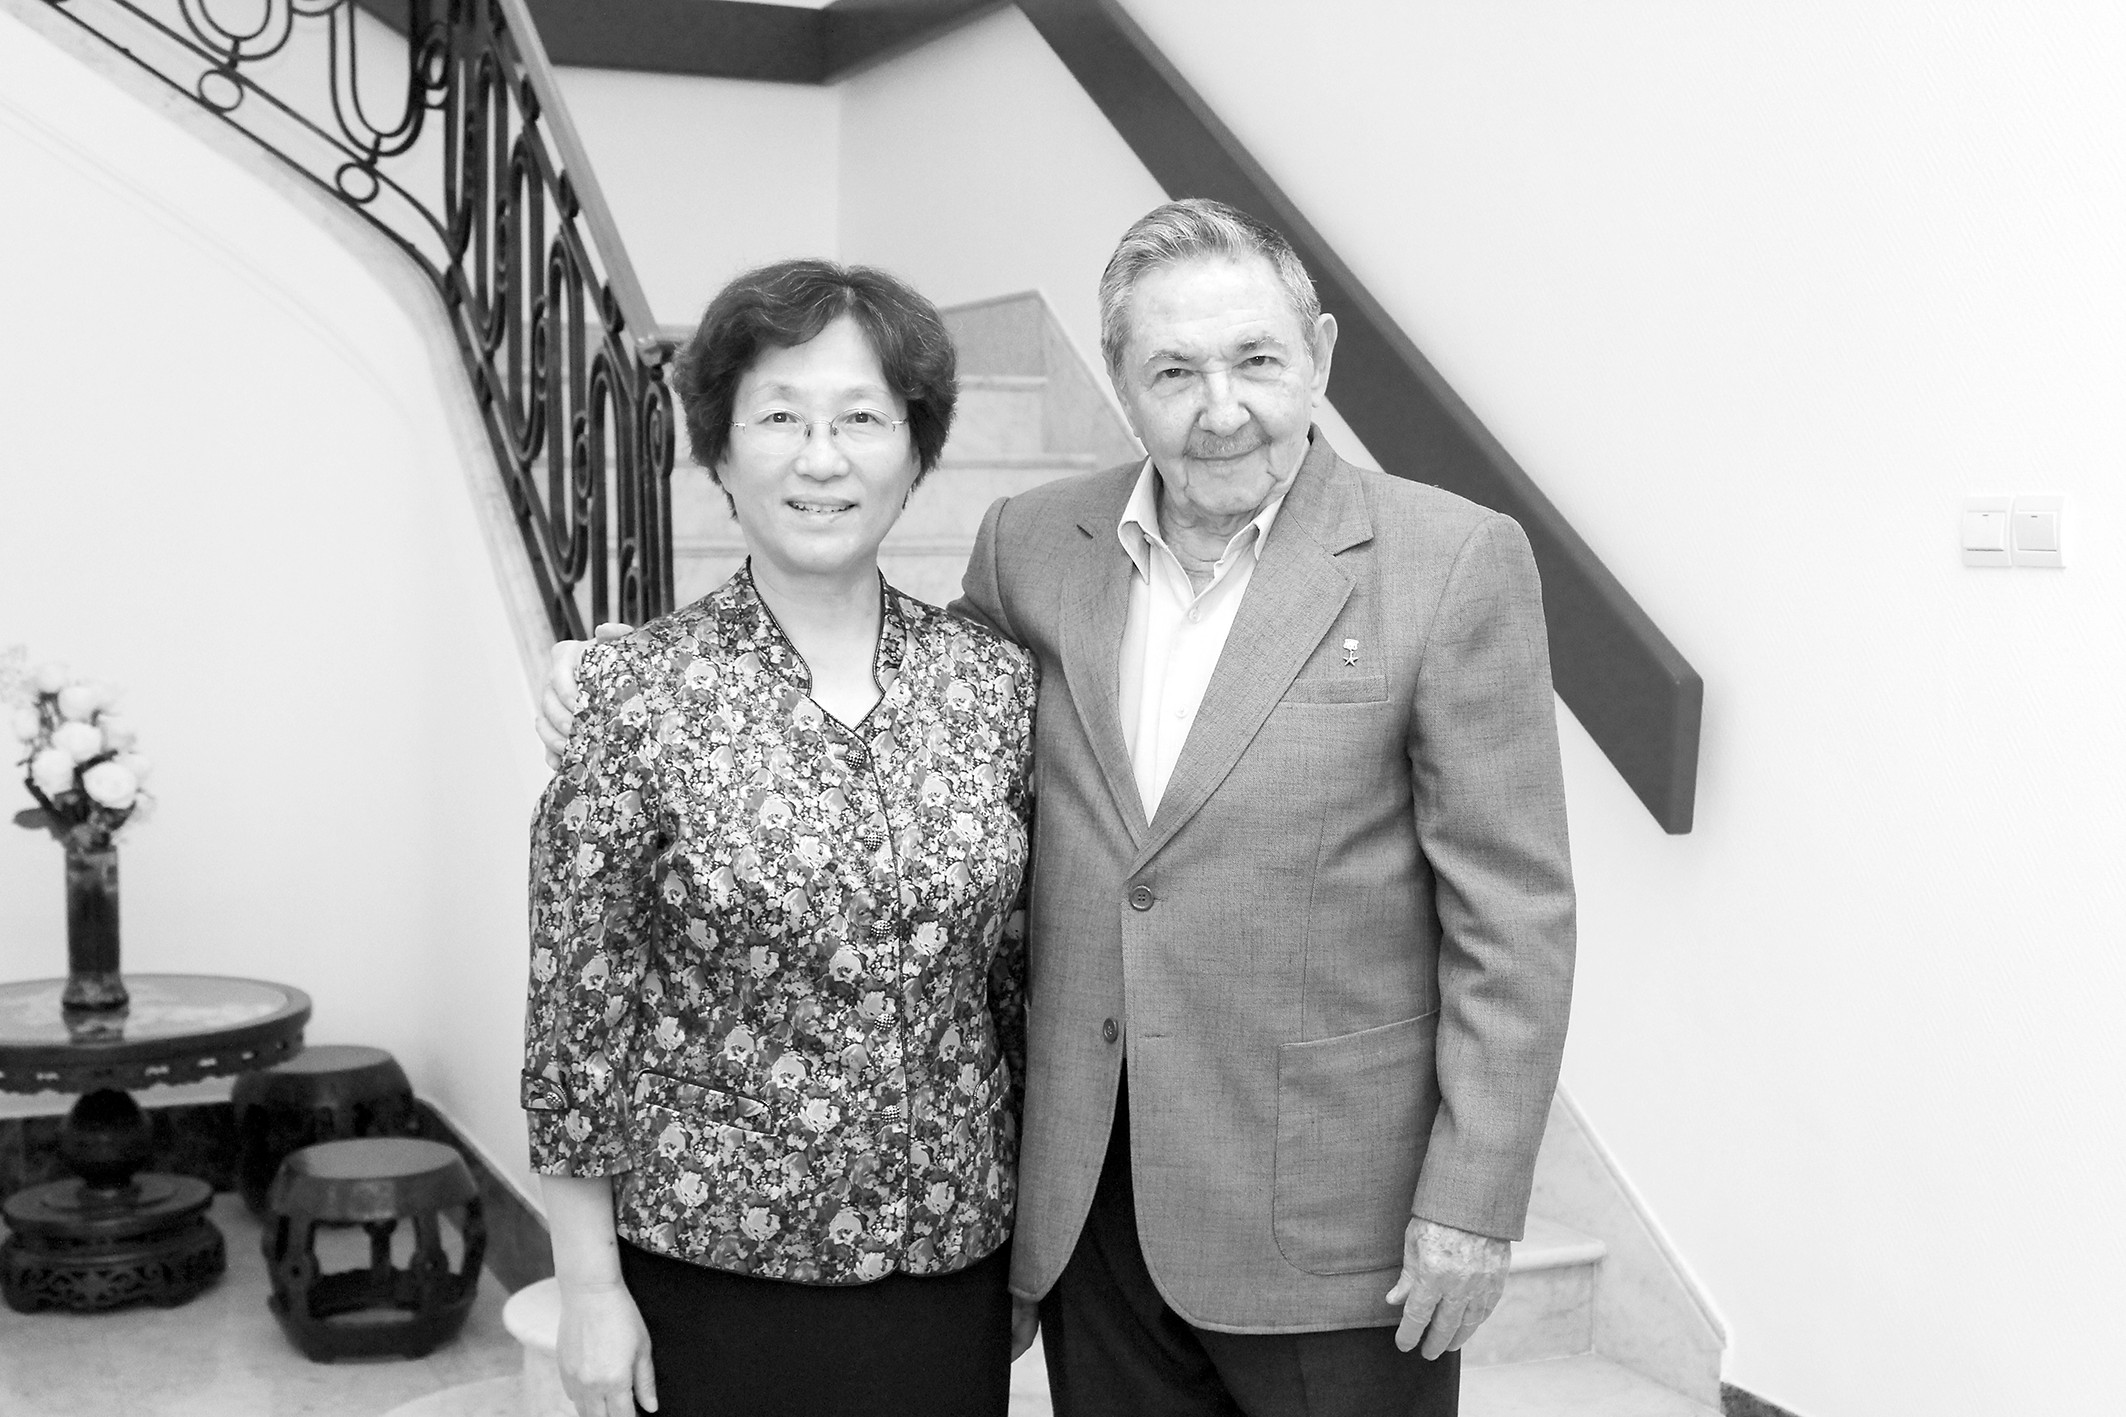 《环球时报》专访:中国驻古巴前大使讲述古巴